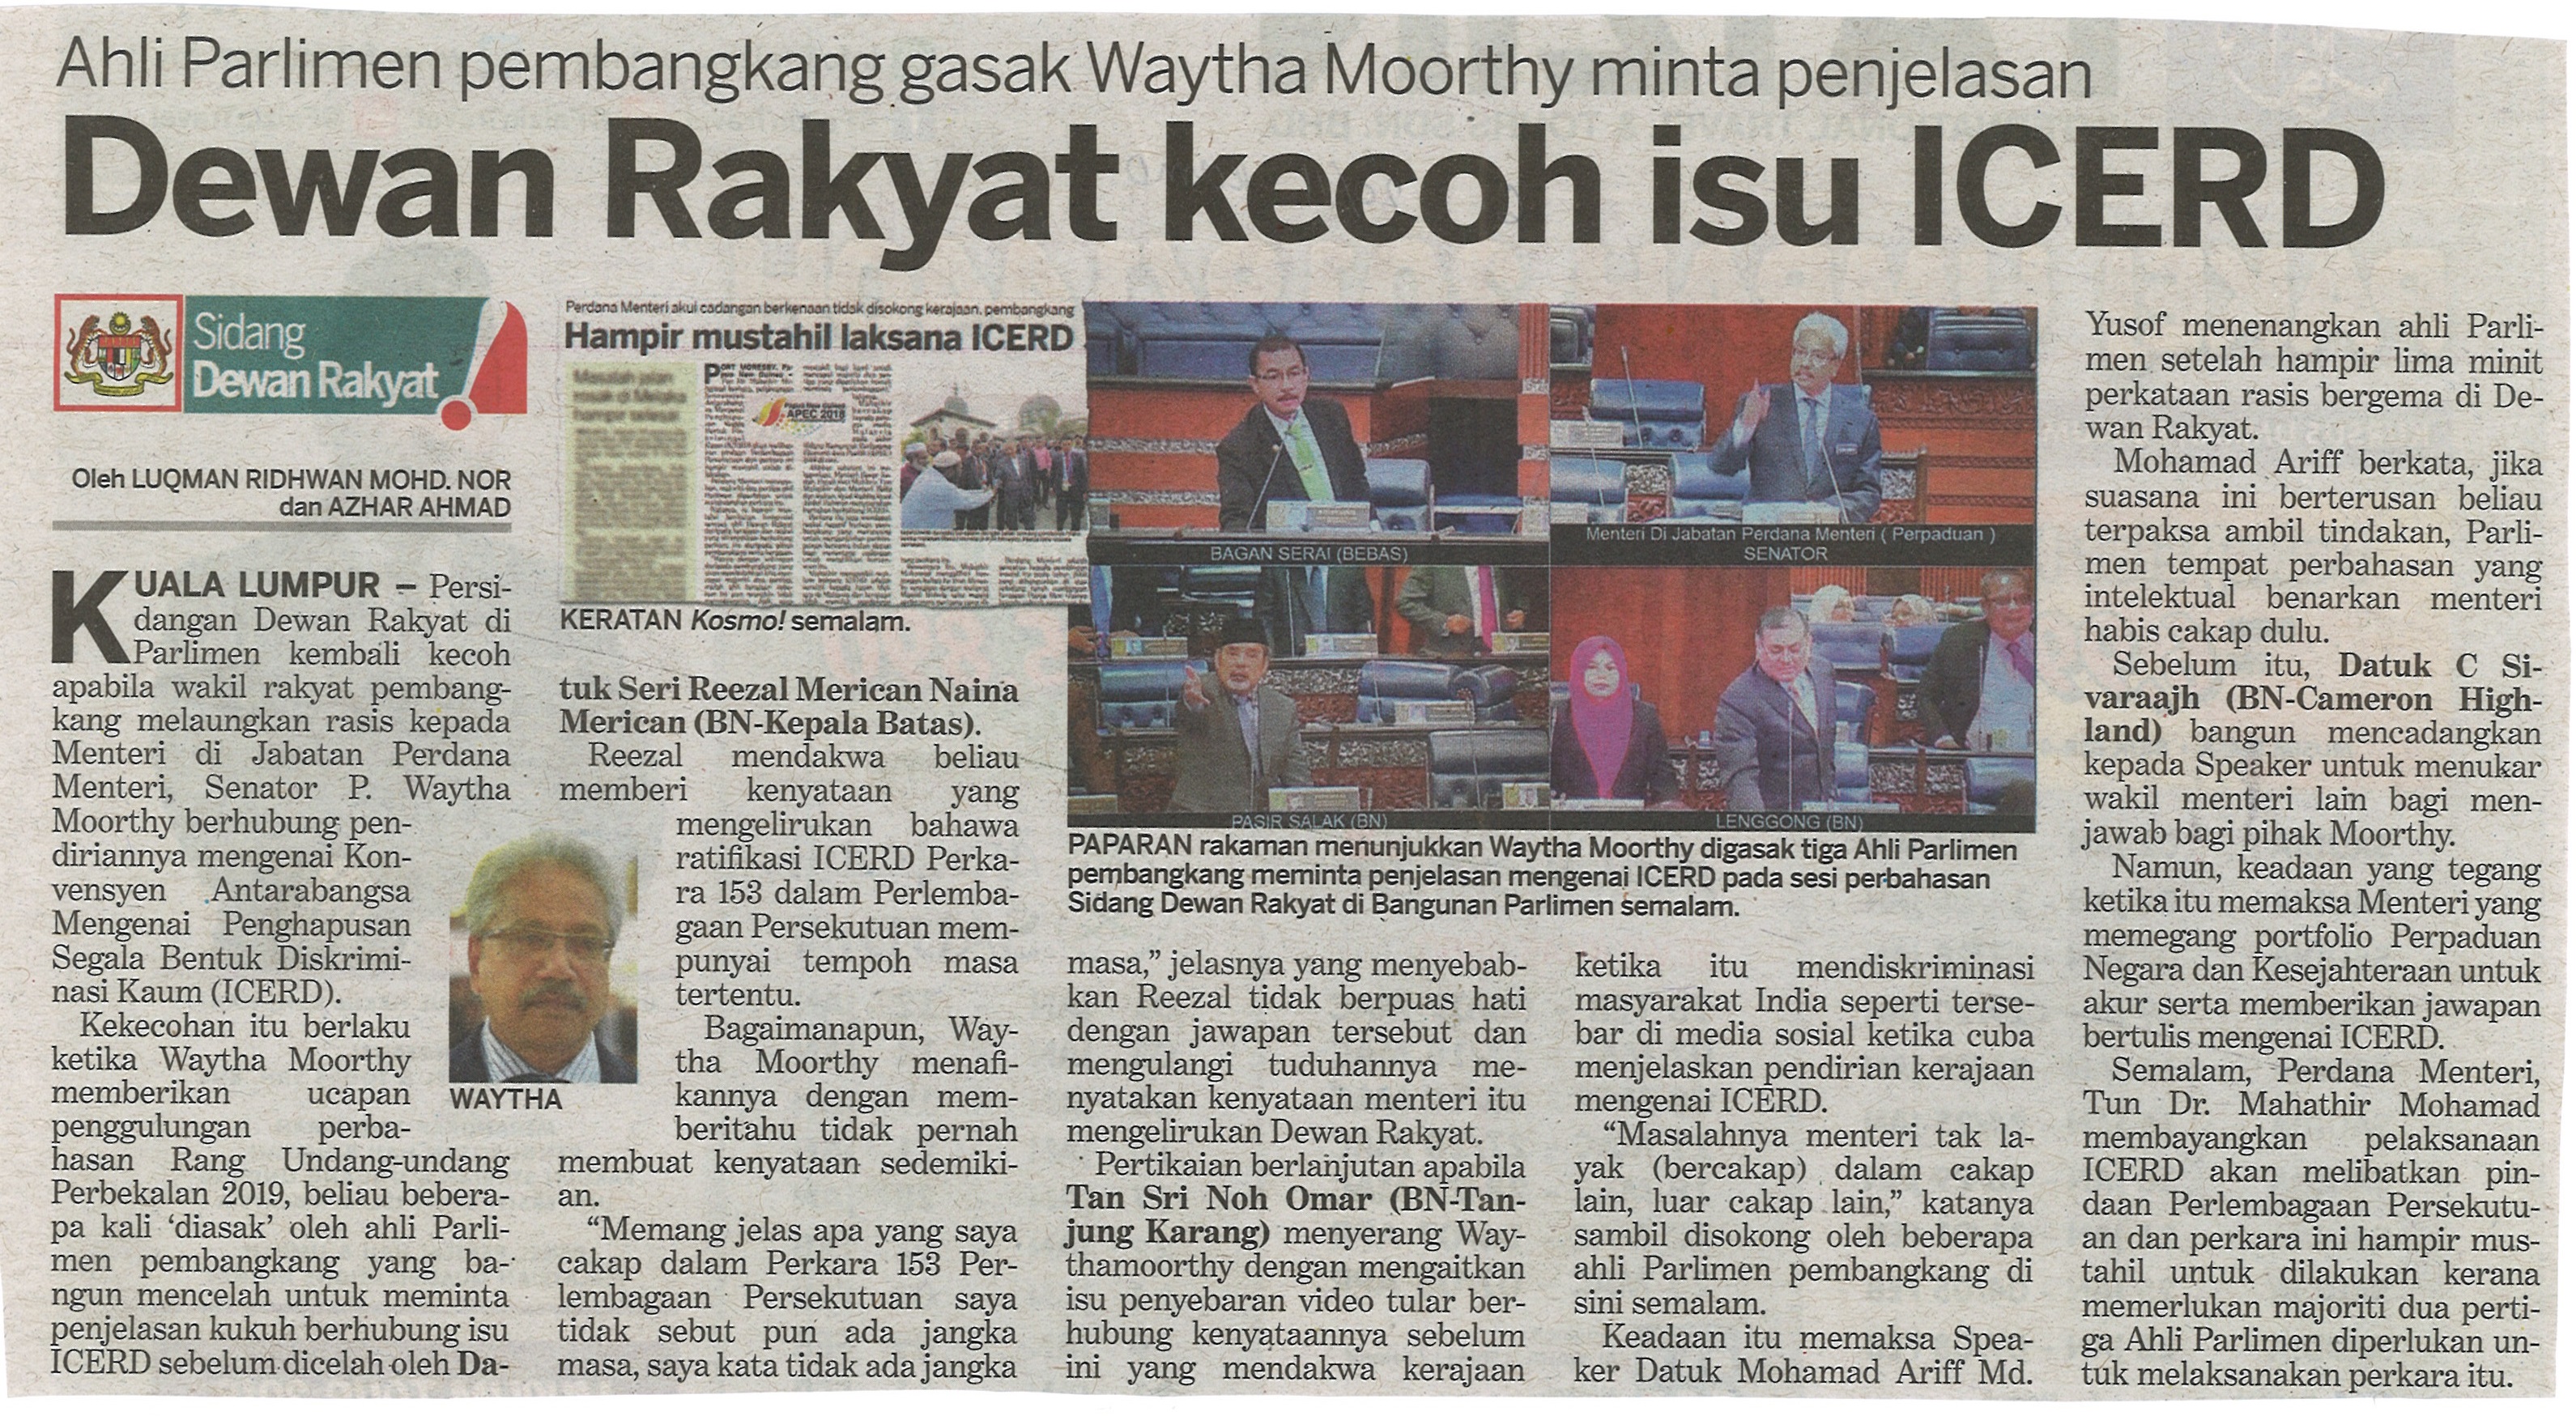 Article Melayu From Surat Khaar